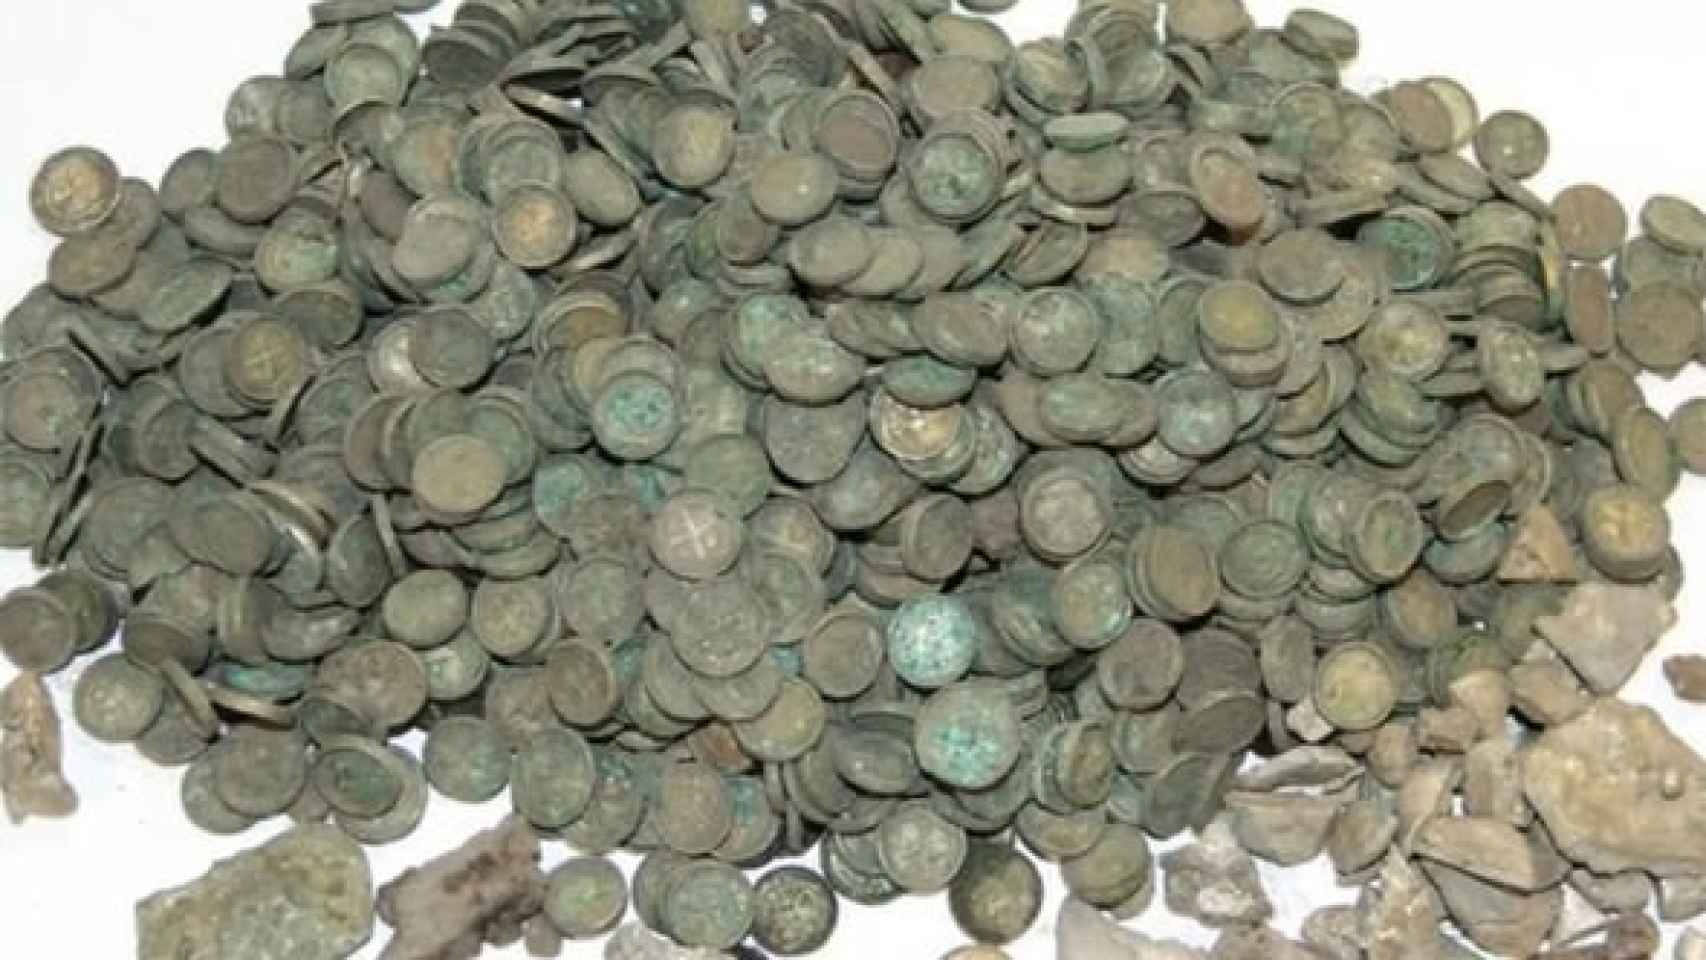 Las monedas medievales halladas en Polonia.